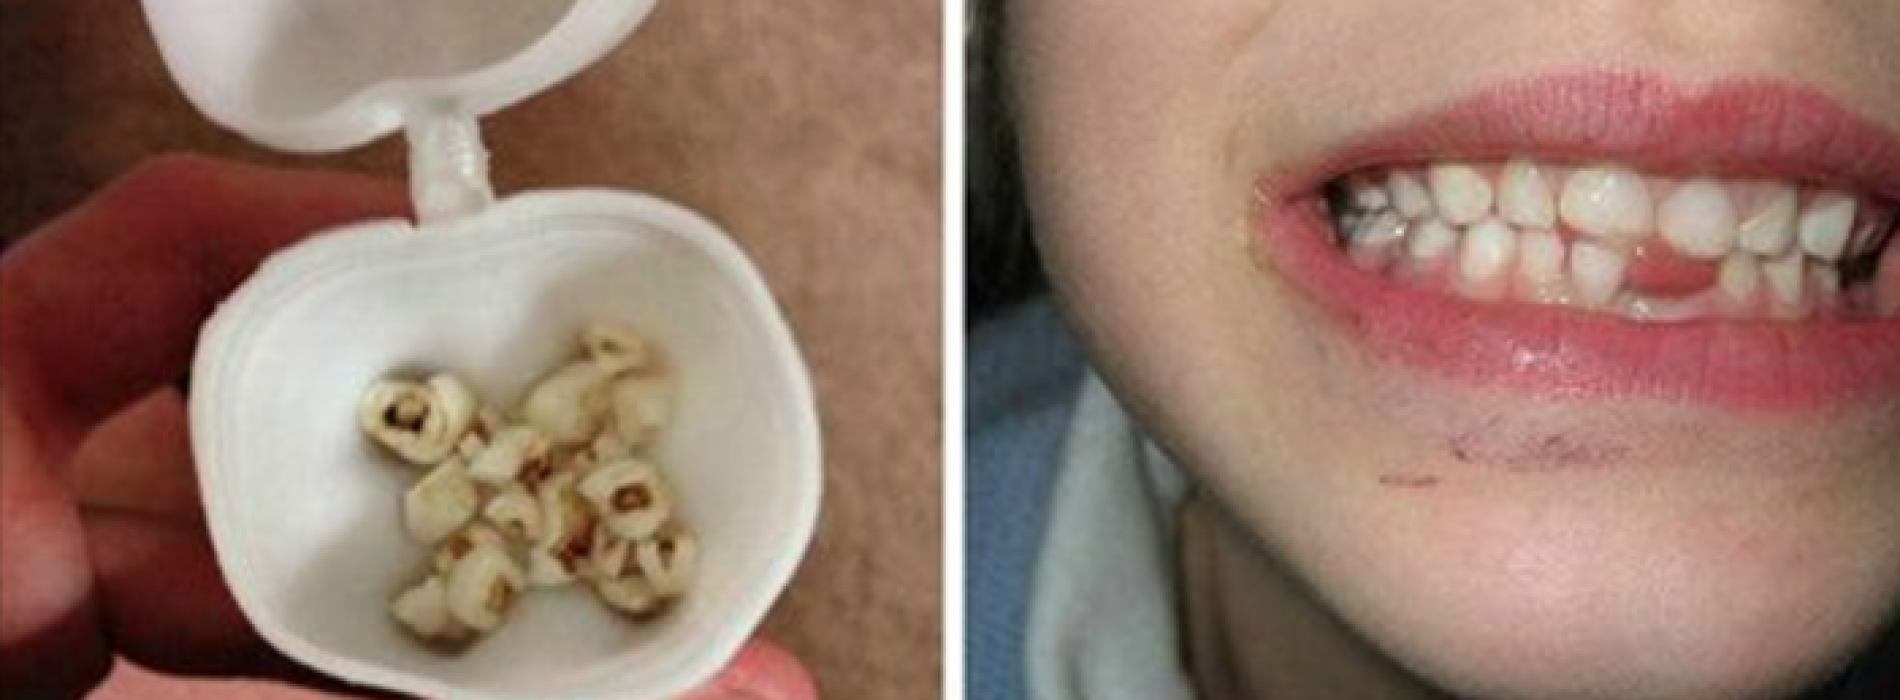 Onderzoekers dringen aan: gooi de melktanden van je kind niet weg! Ze kunnen levens redden!